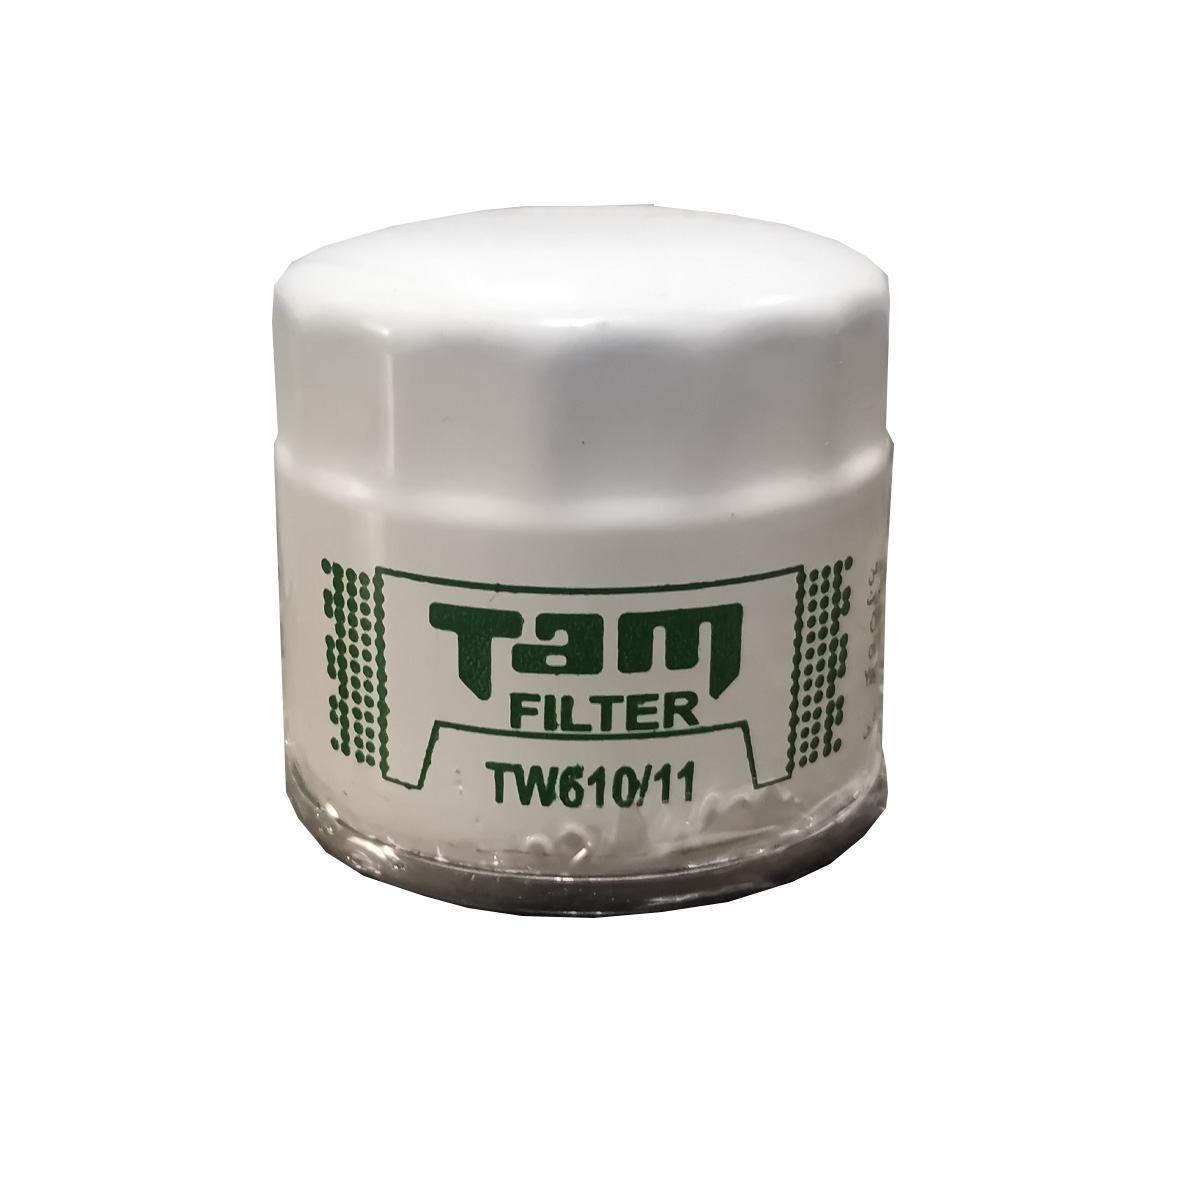 فیلتر روغن تام مدل tw610/11 مناسب برای mvm110